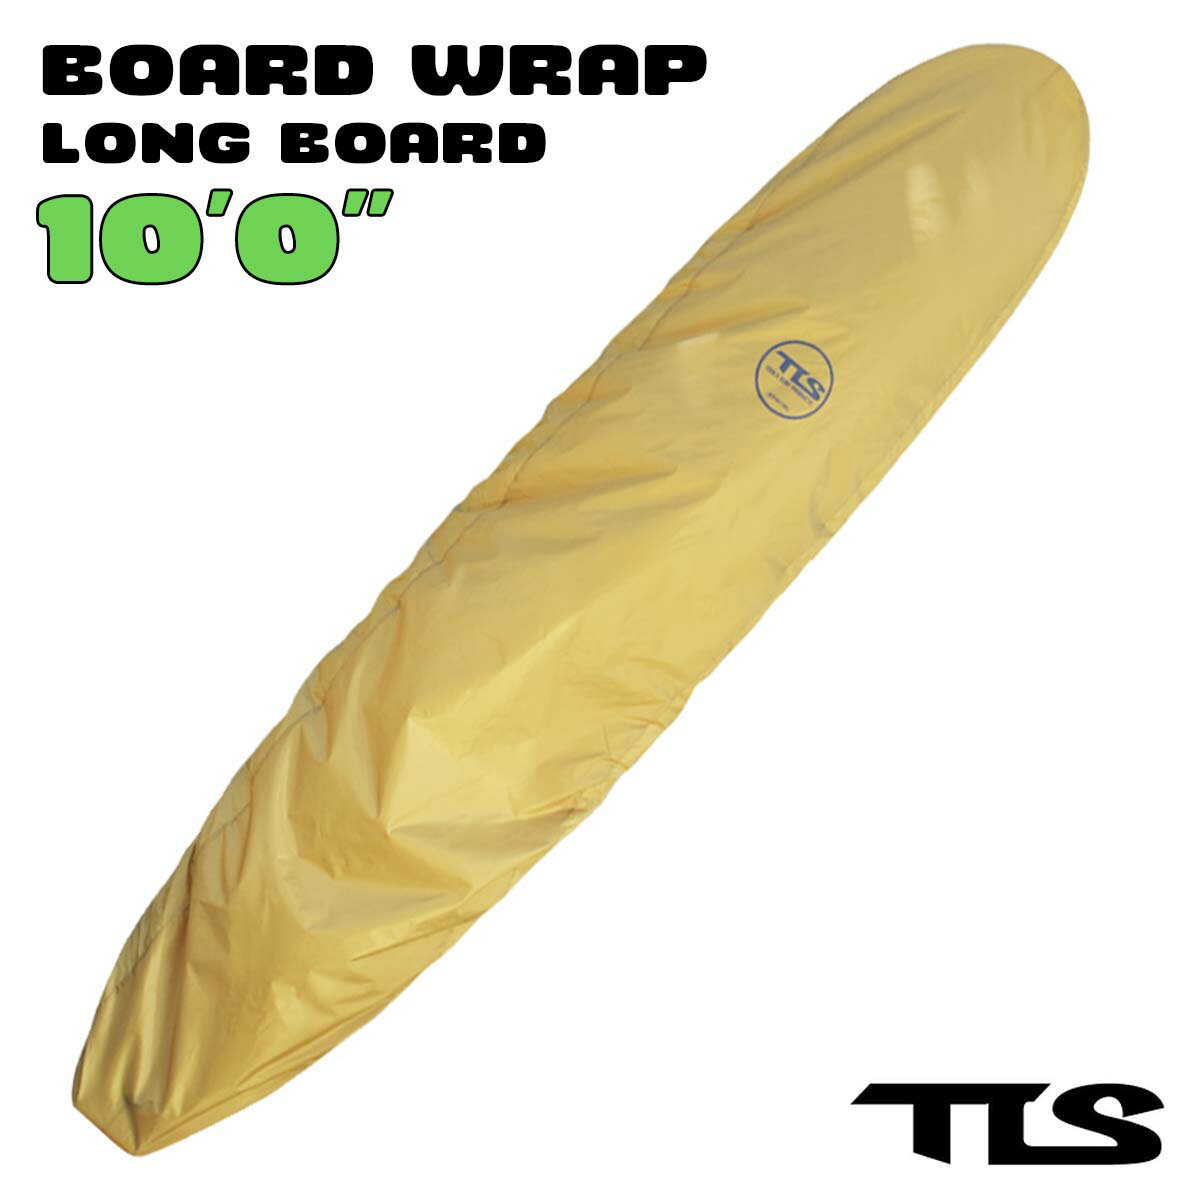 TOOLS TLS トゥールス ツールス サーフボード デッキカバー BOARD WRAP LONG 10ft ロングボード サーフィン 板 ボードラップ 超軽量 熱反射素材 ハードケース インナー ゴム紐